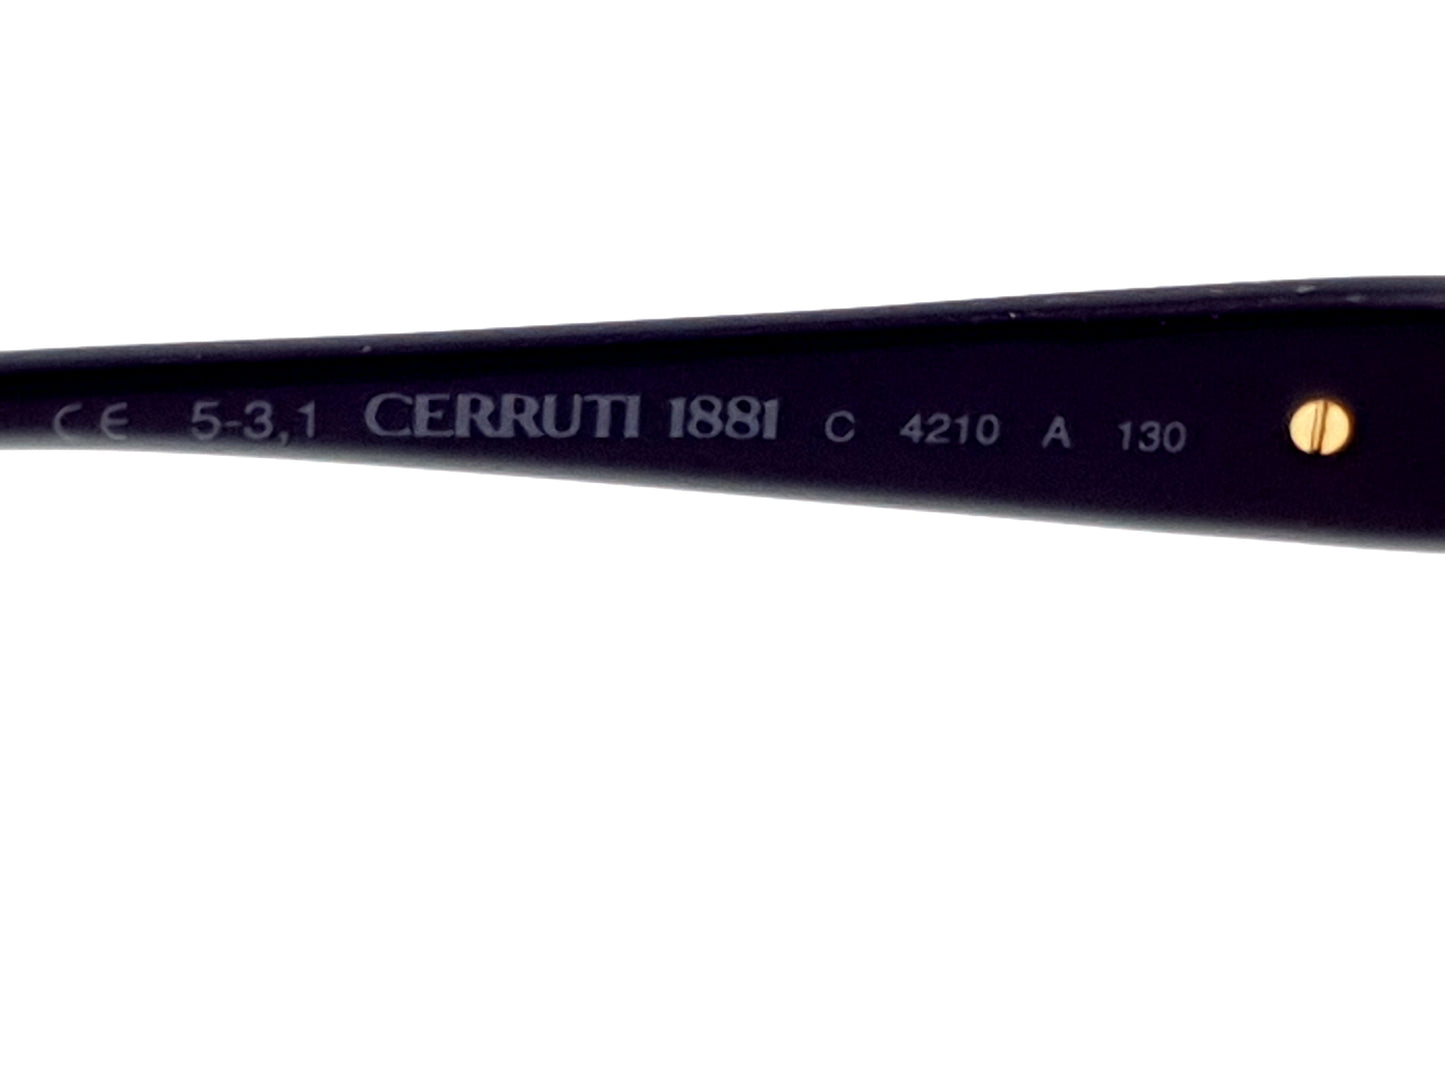 CERRUTI 1881 C4210